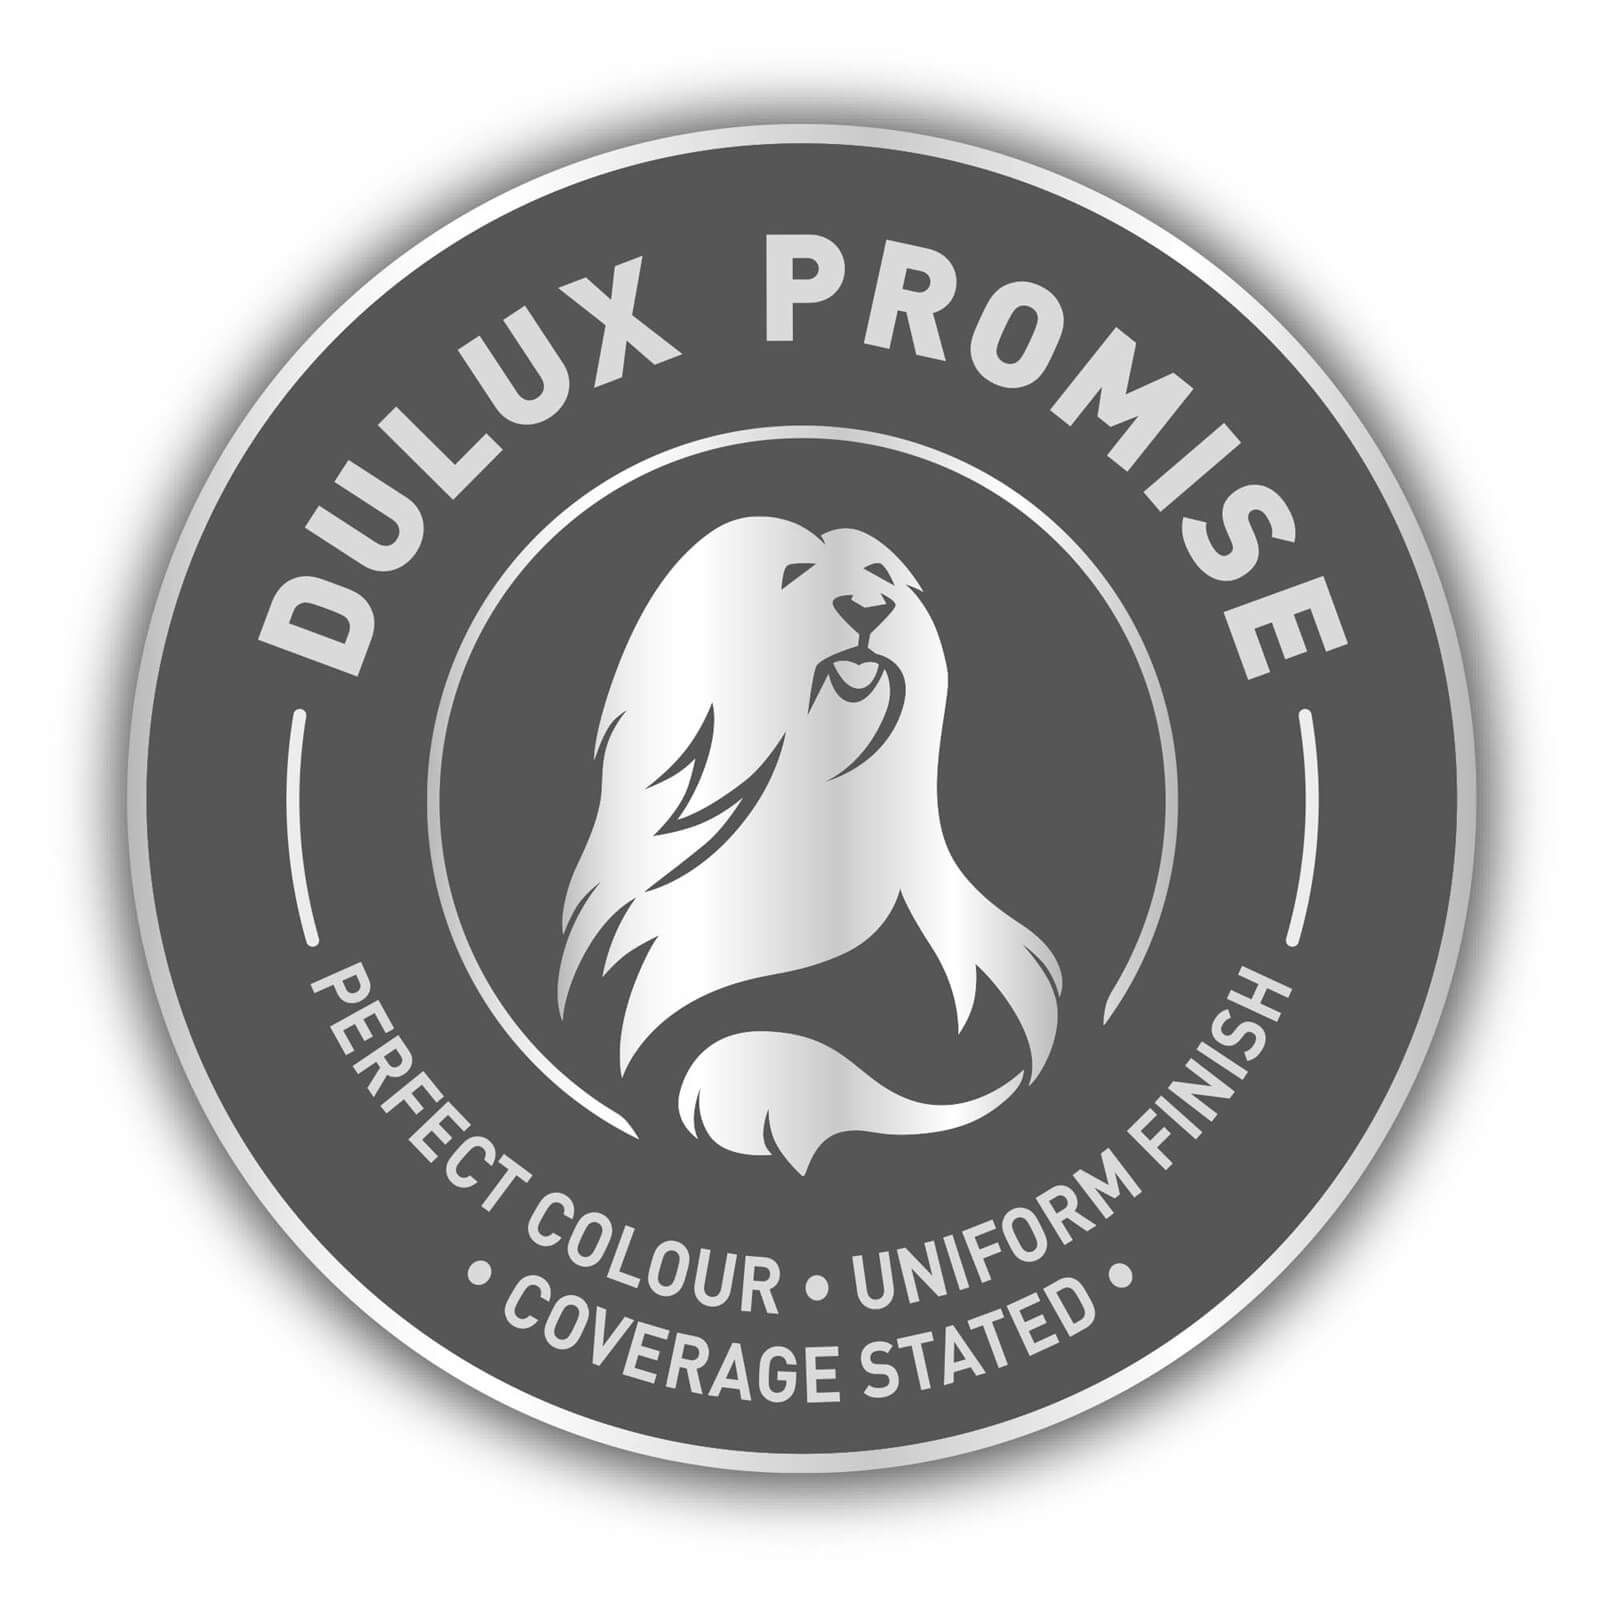 Dulux Easycare Washable & Tough Matt Paint Magnolia - 5L